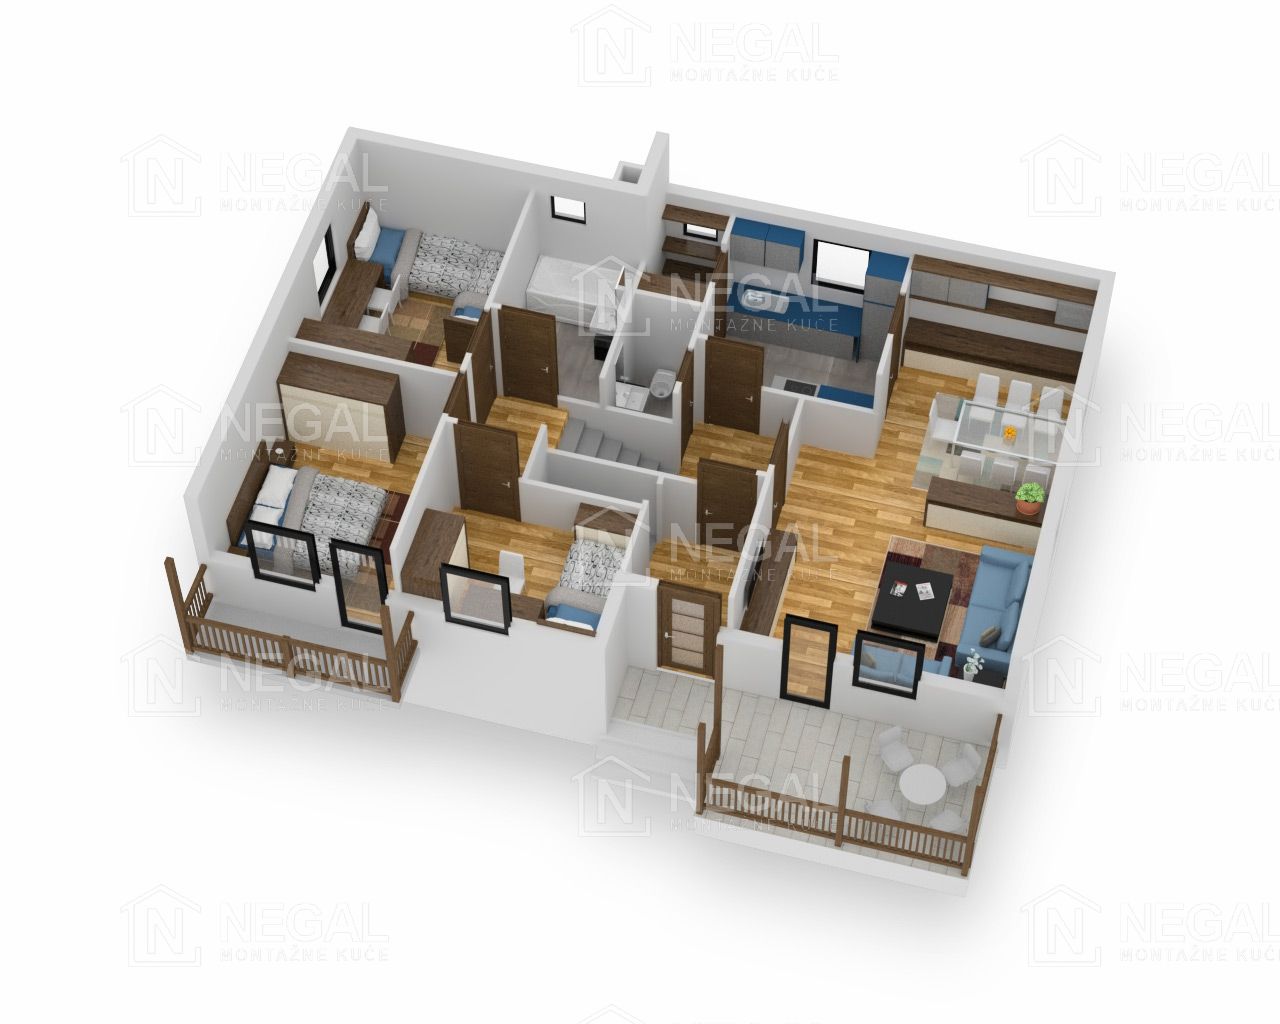 Montažna kuća Klasik Negal Ivanjica | Tip Montažne kuće 101 - 3D plan